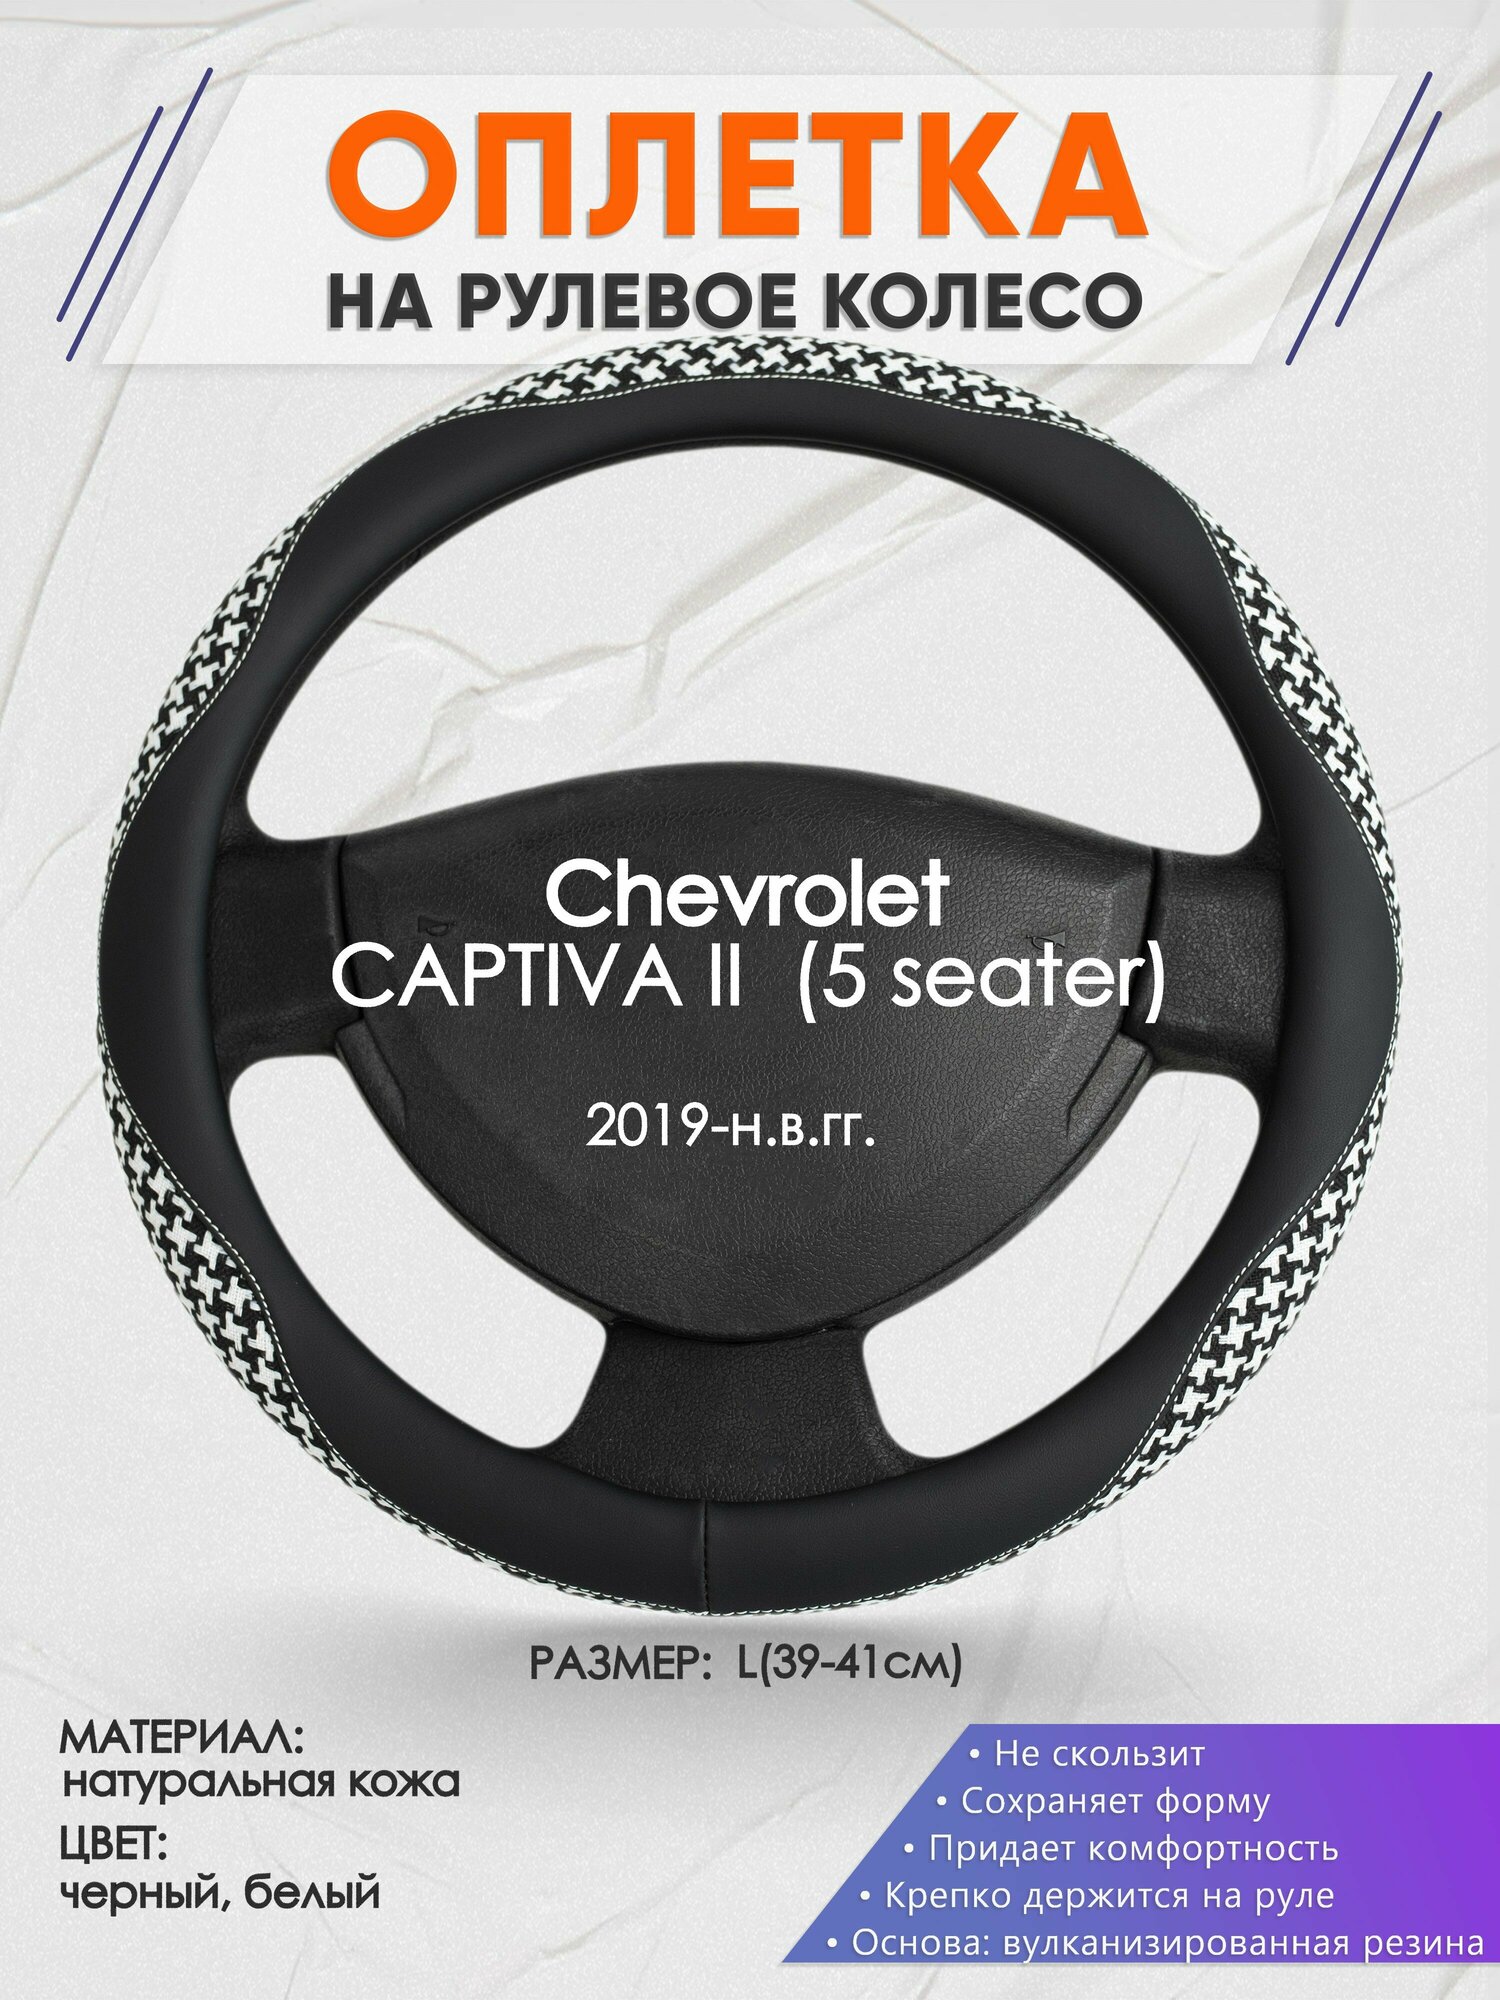 Оплетка на руль для Chevrolet CAPTIVA 2 (5 seater)(Шевроле Каптива) 2019-н. в, L(39-41см), Натуральная кожа 21